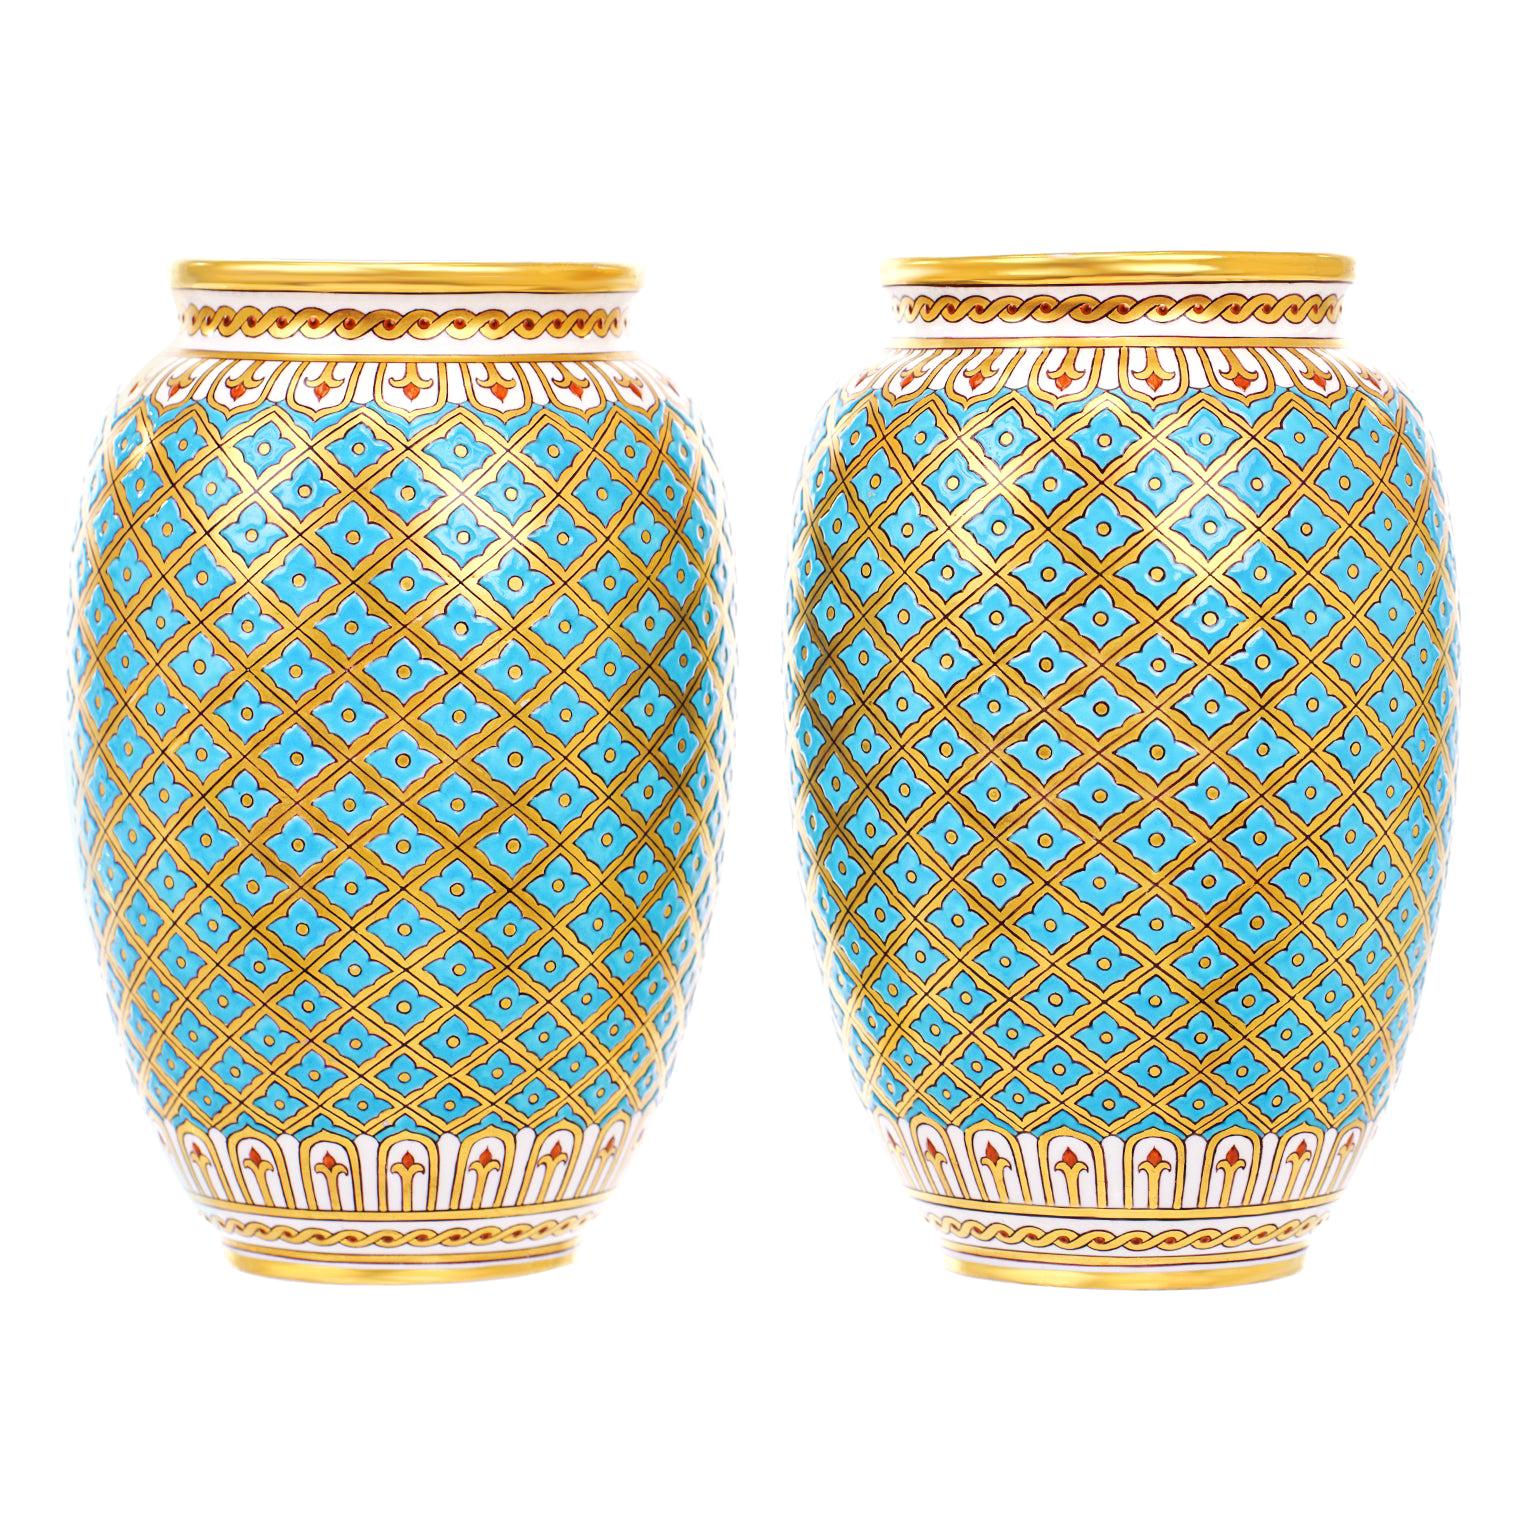 Gorgeous Pair of Minton Vases, circa 1880s, England